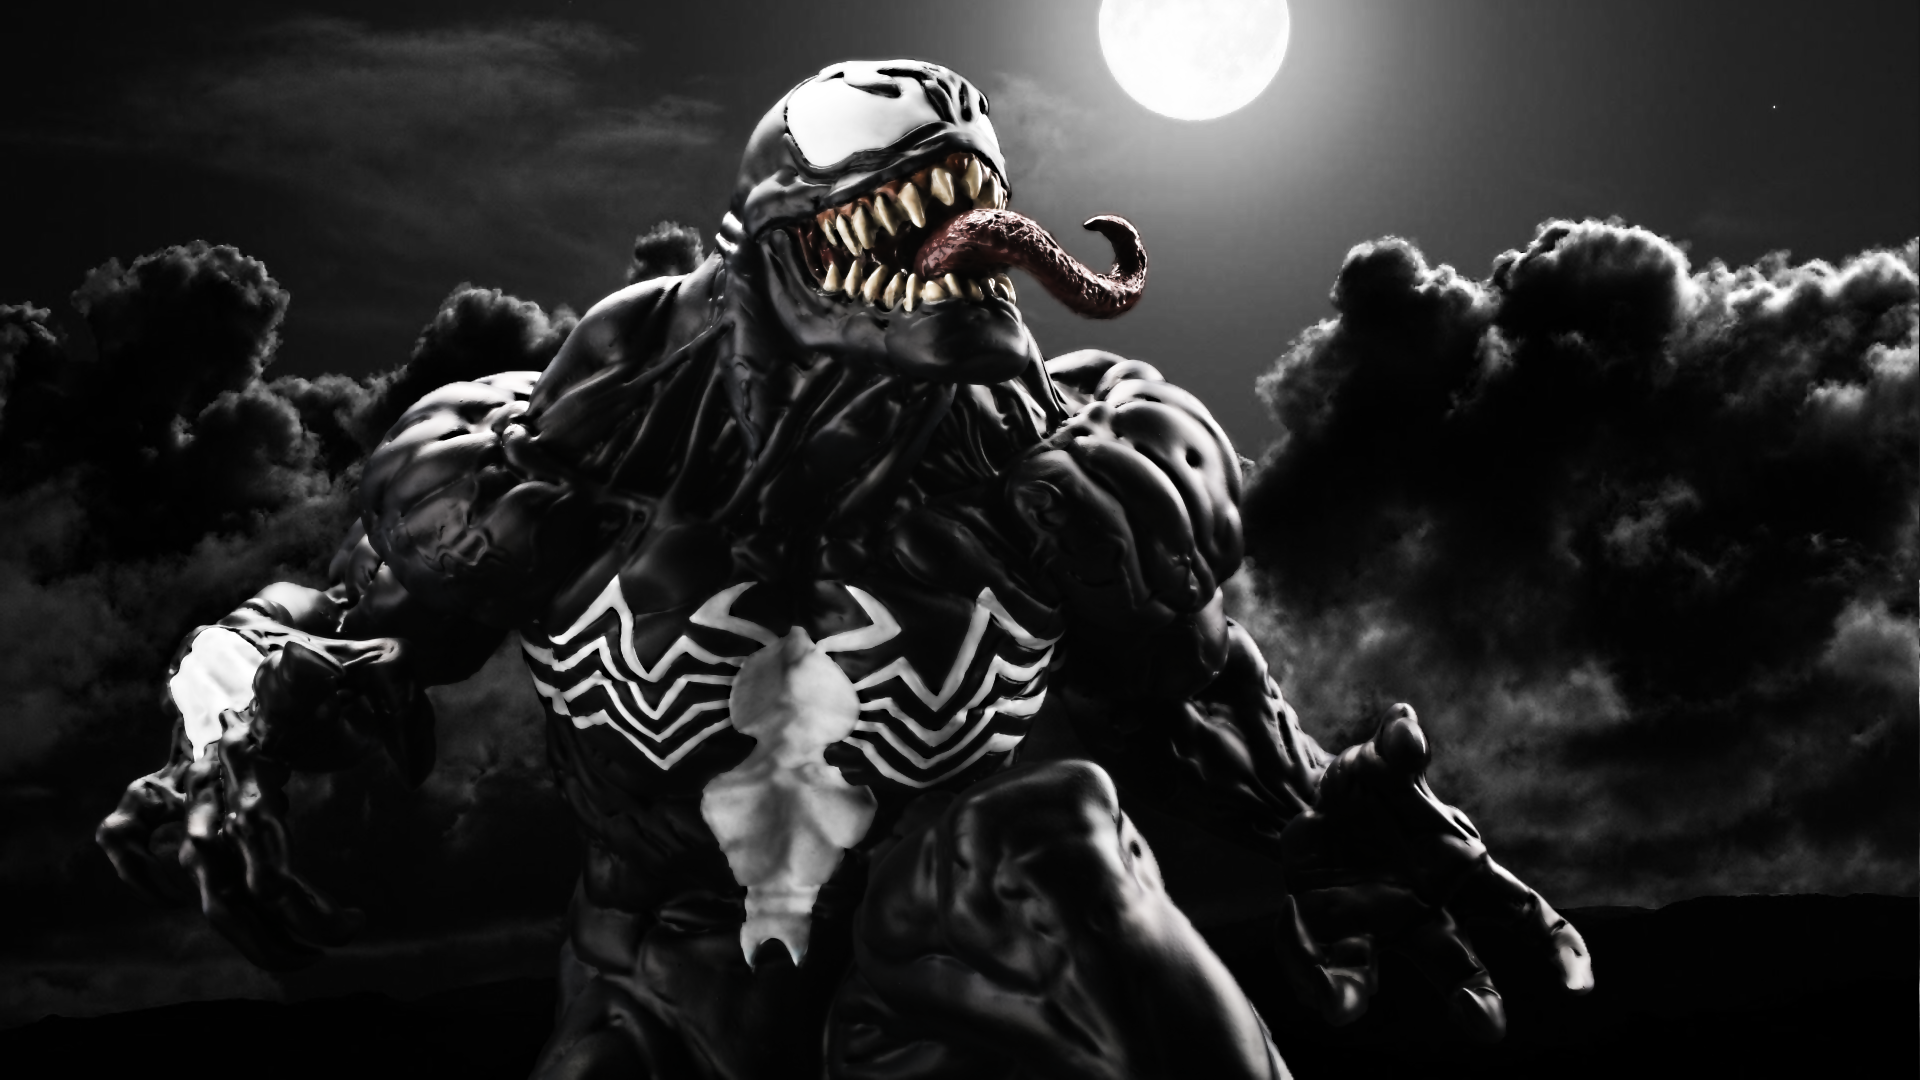 download Venom